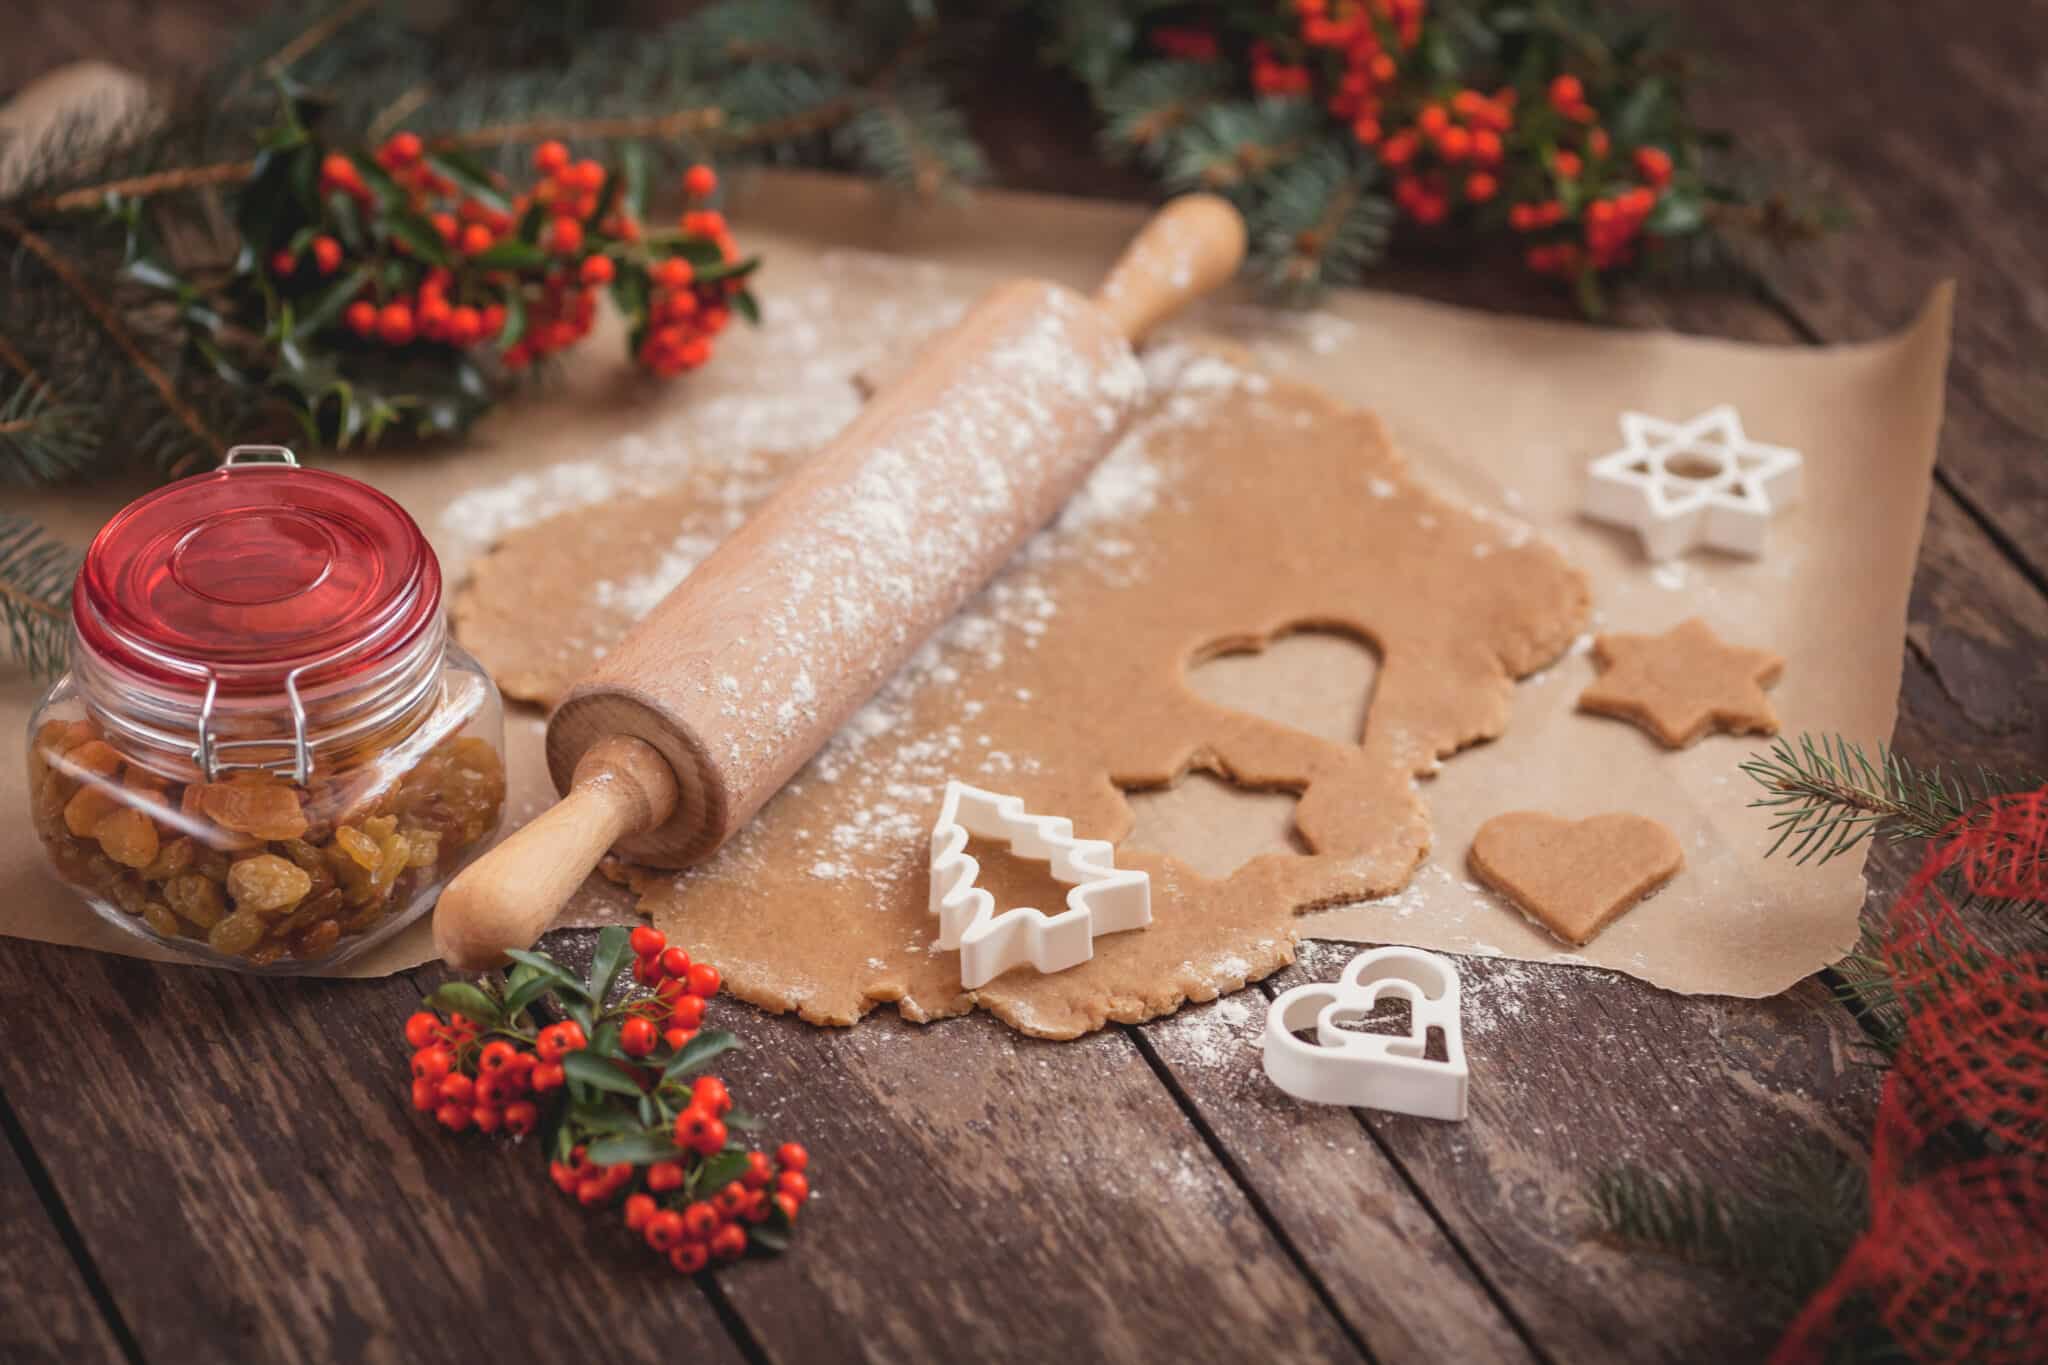 Les 13 desserts, tradition provençale de Noël